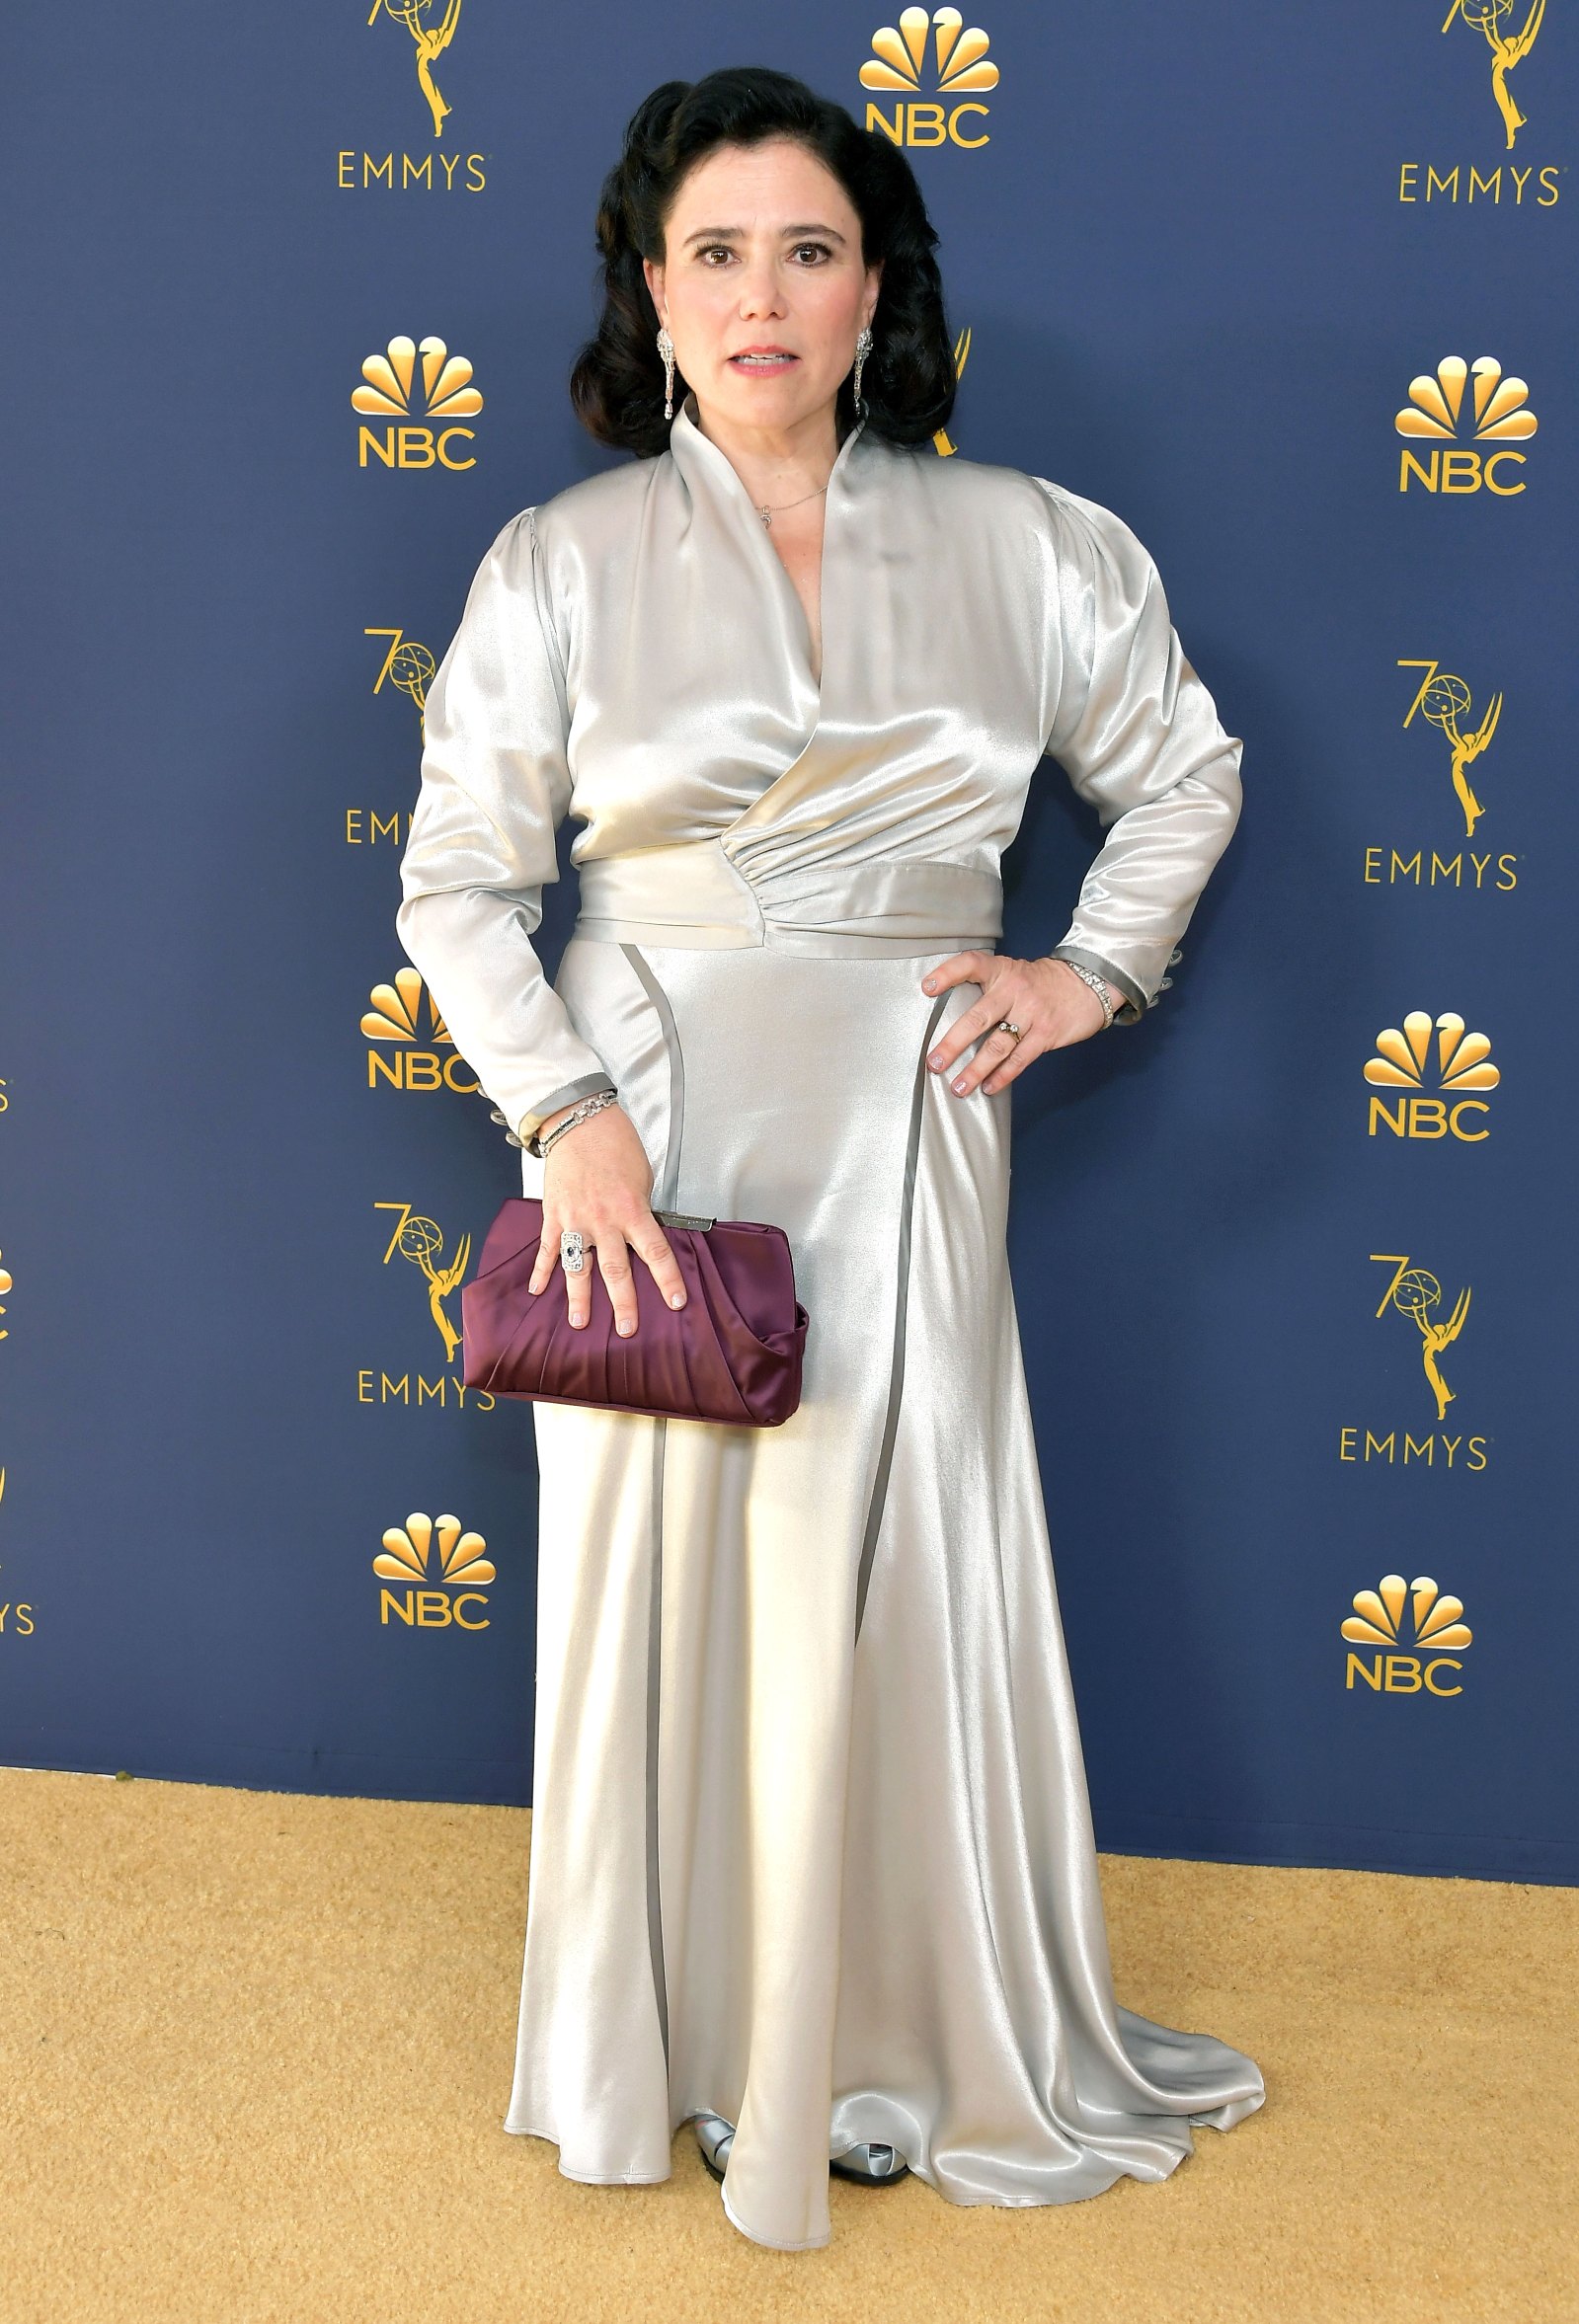 Alex Borstein ReWore Her Wedding Dress at 2018 Emmys Pics